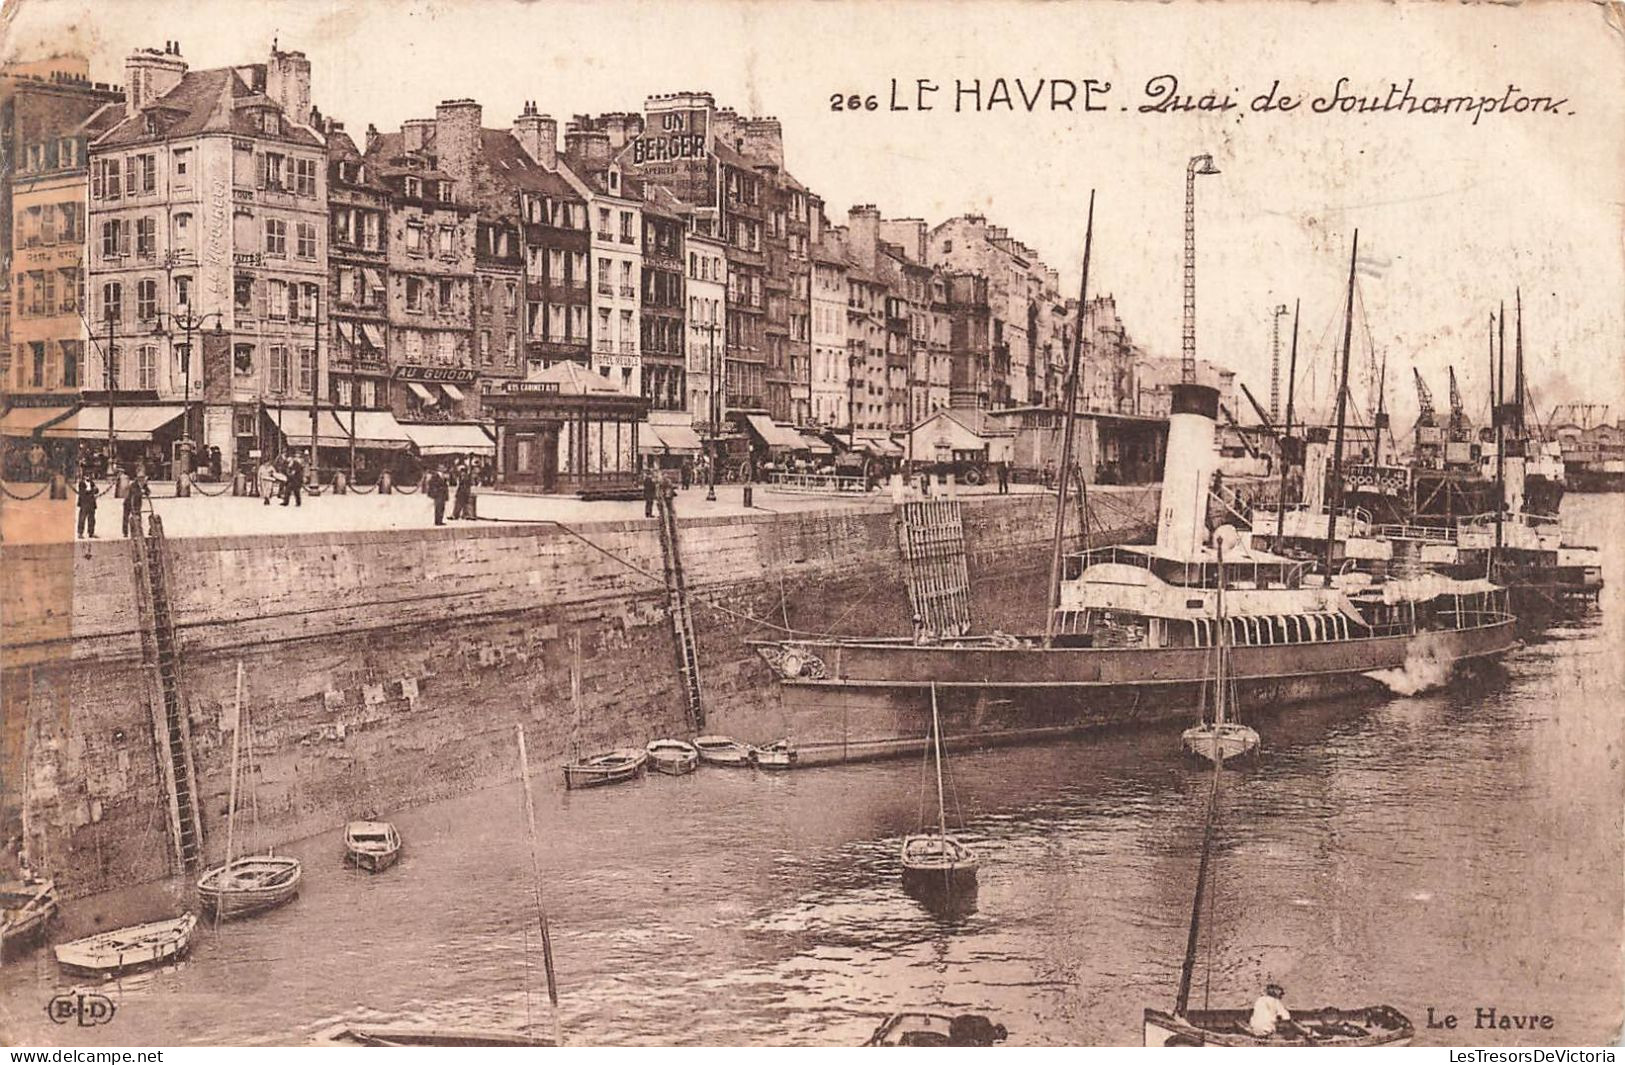 FRANCE - Le Havre - Quai De Southampton - Carte Postale Ancienne - Hafen